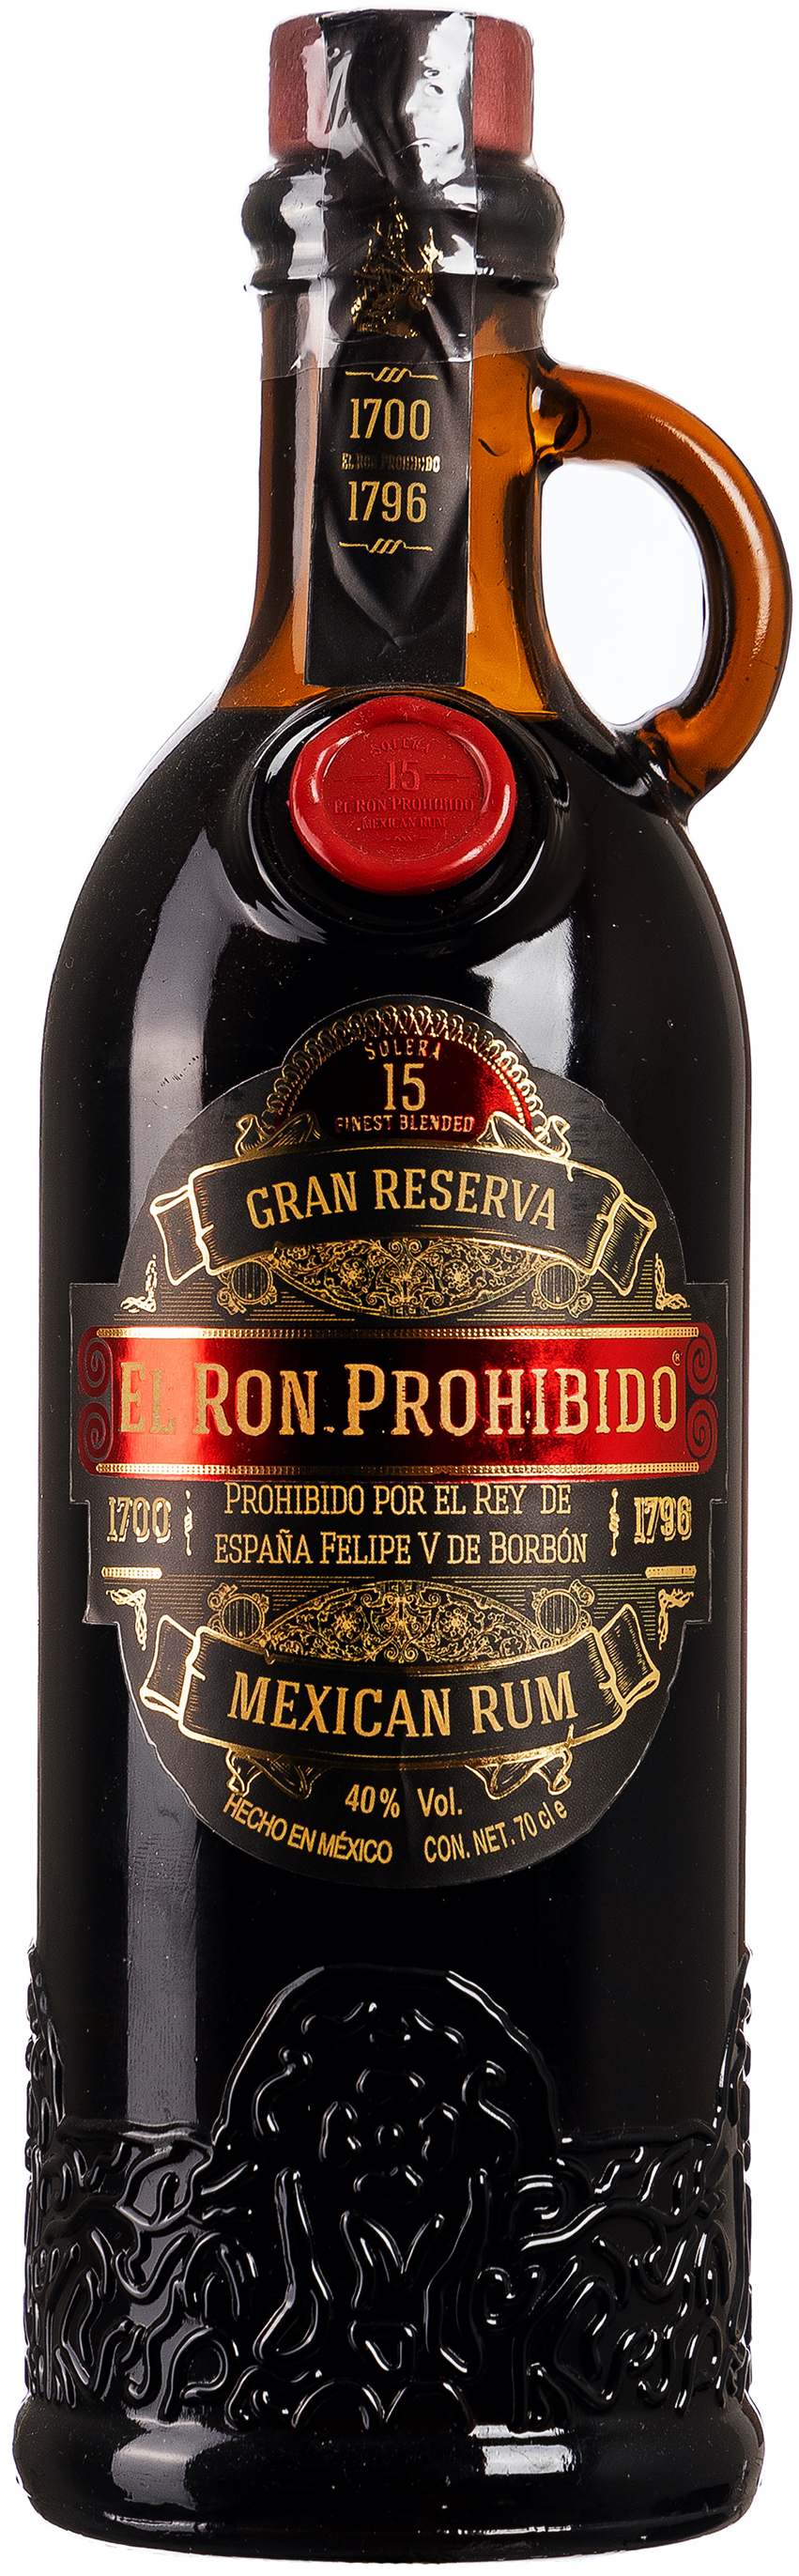 El Ron Prohibido Solera 15 Jahre Gran Reserva Mexican Rum 40% vol. 0,7L